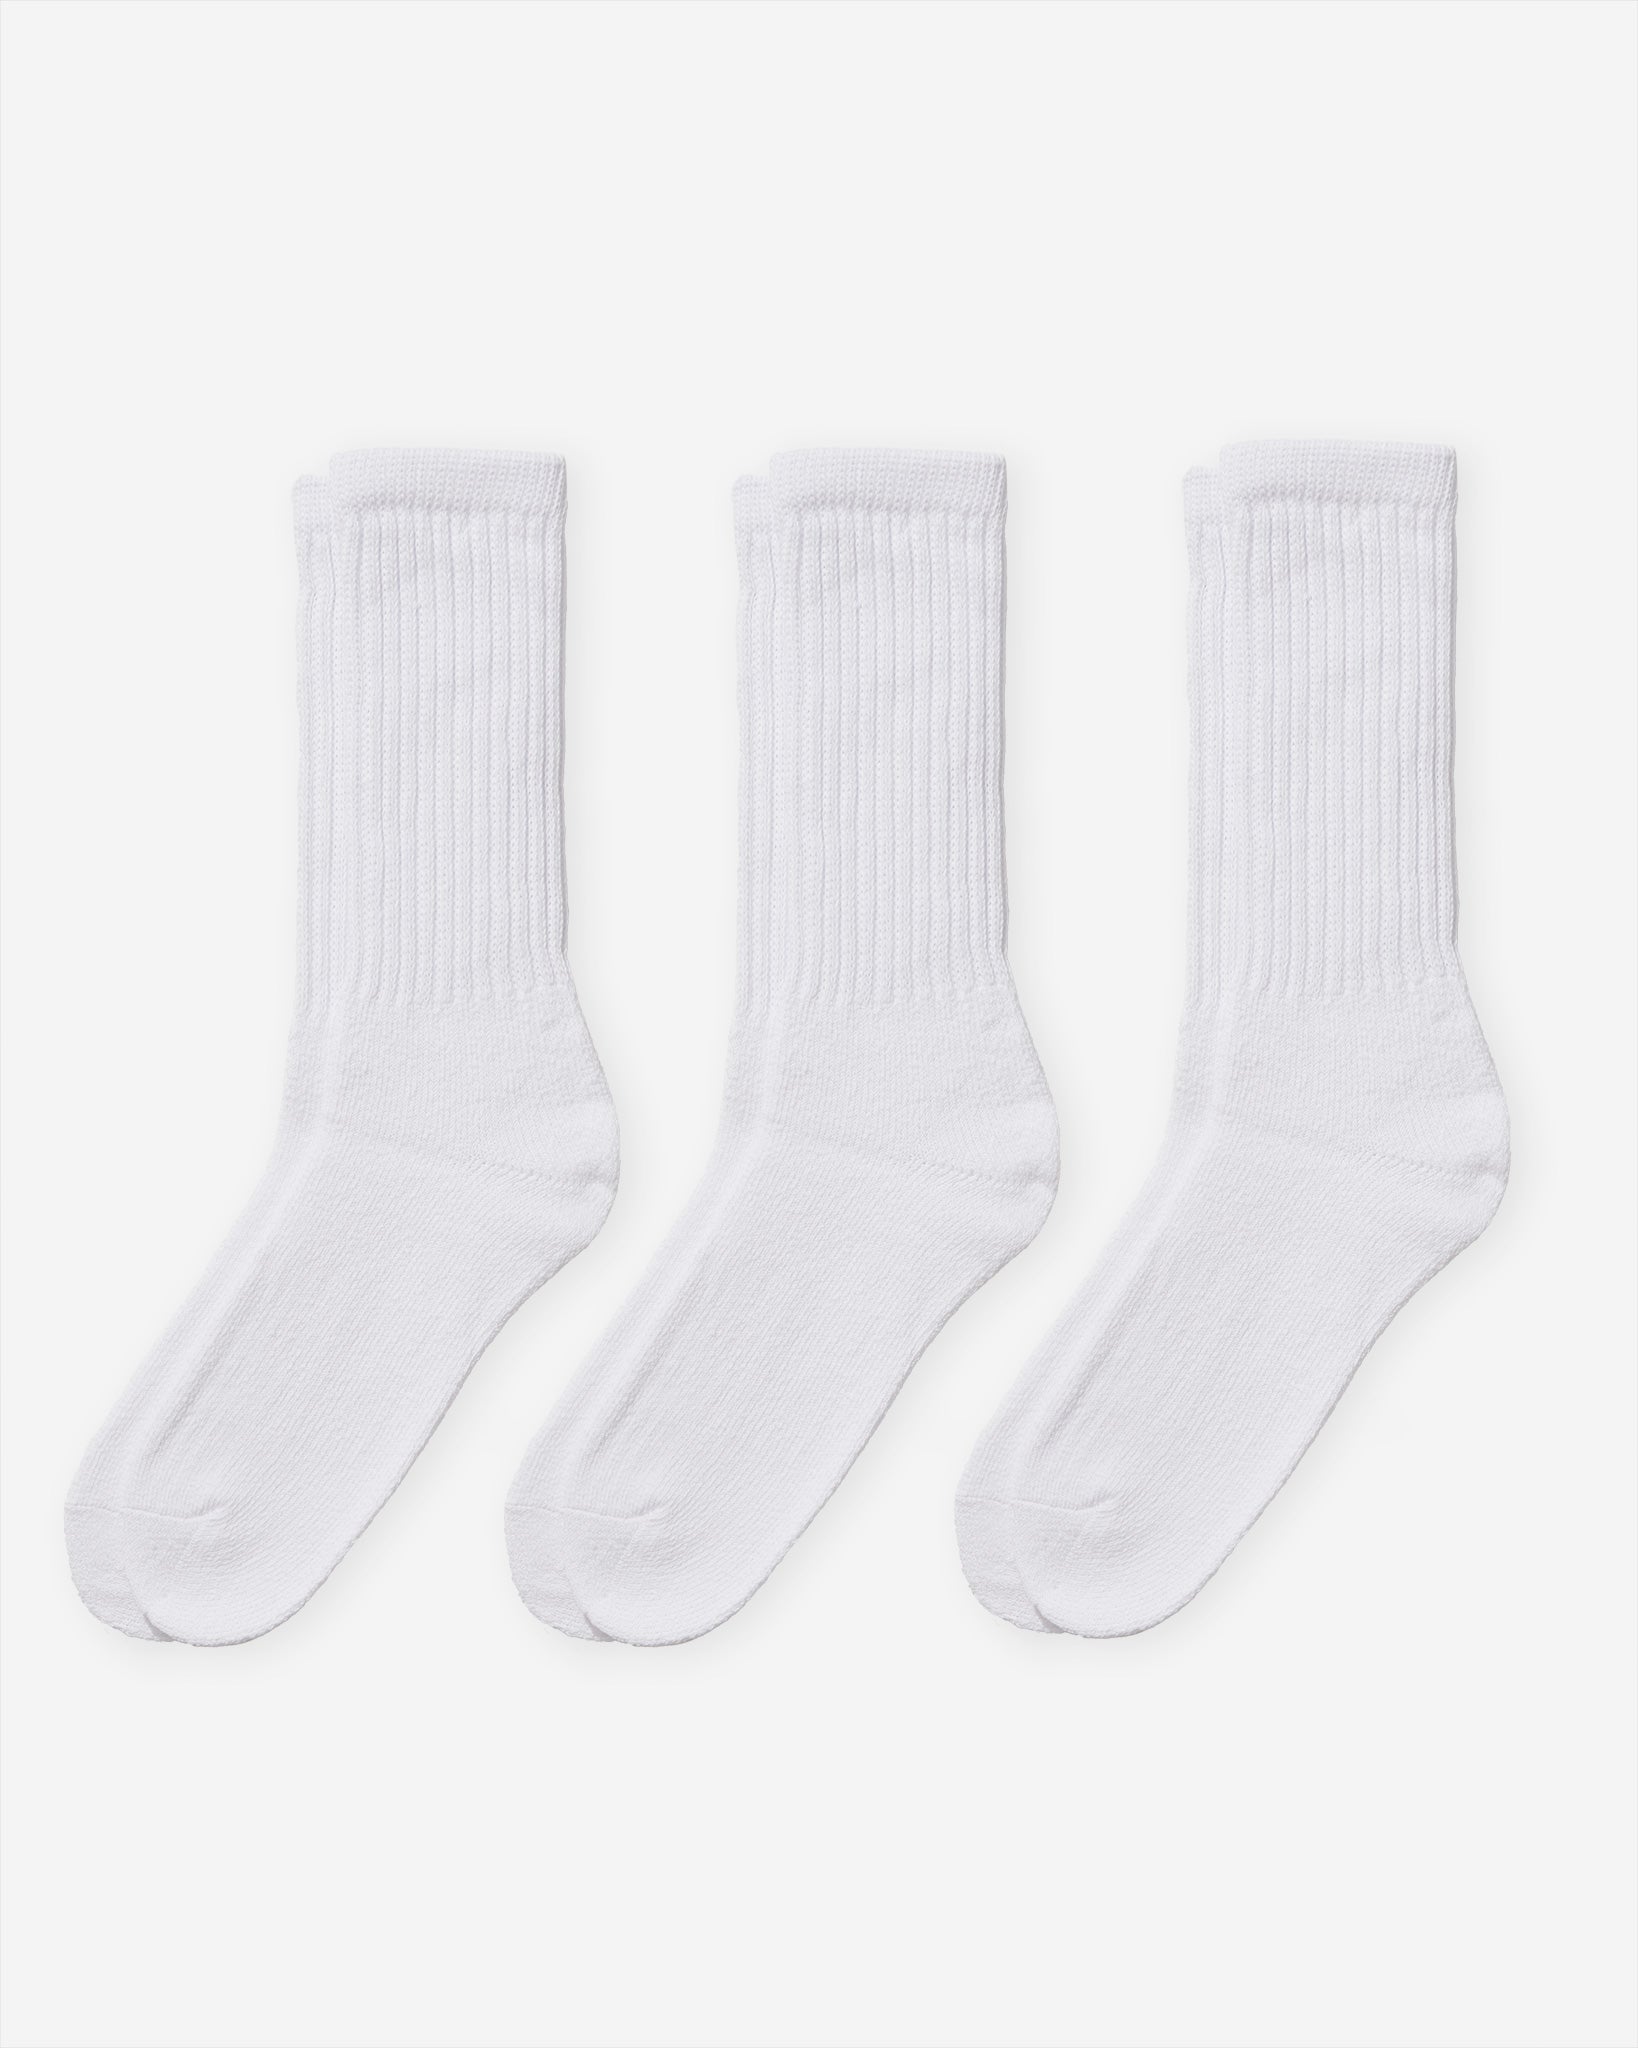 Sinker White Plain Socks (3 Pack)